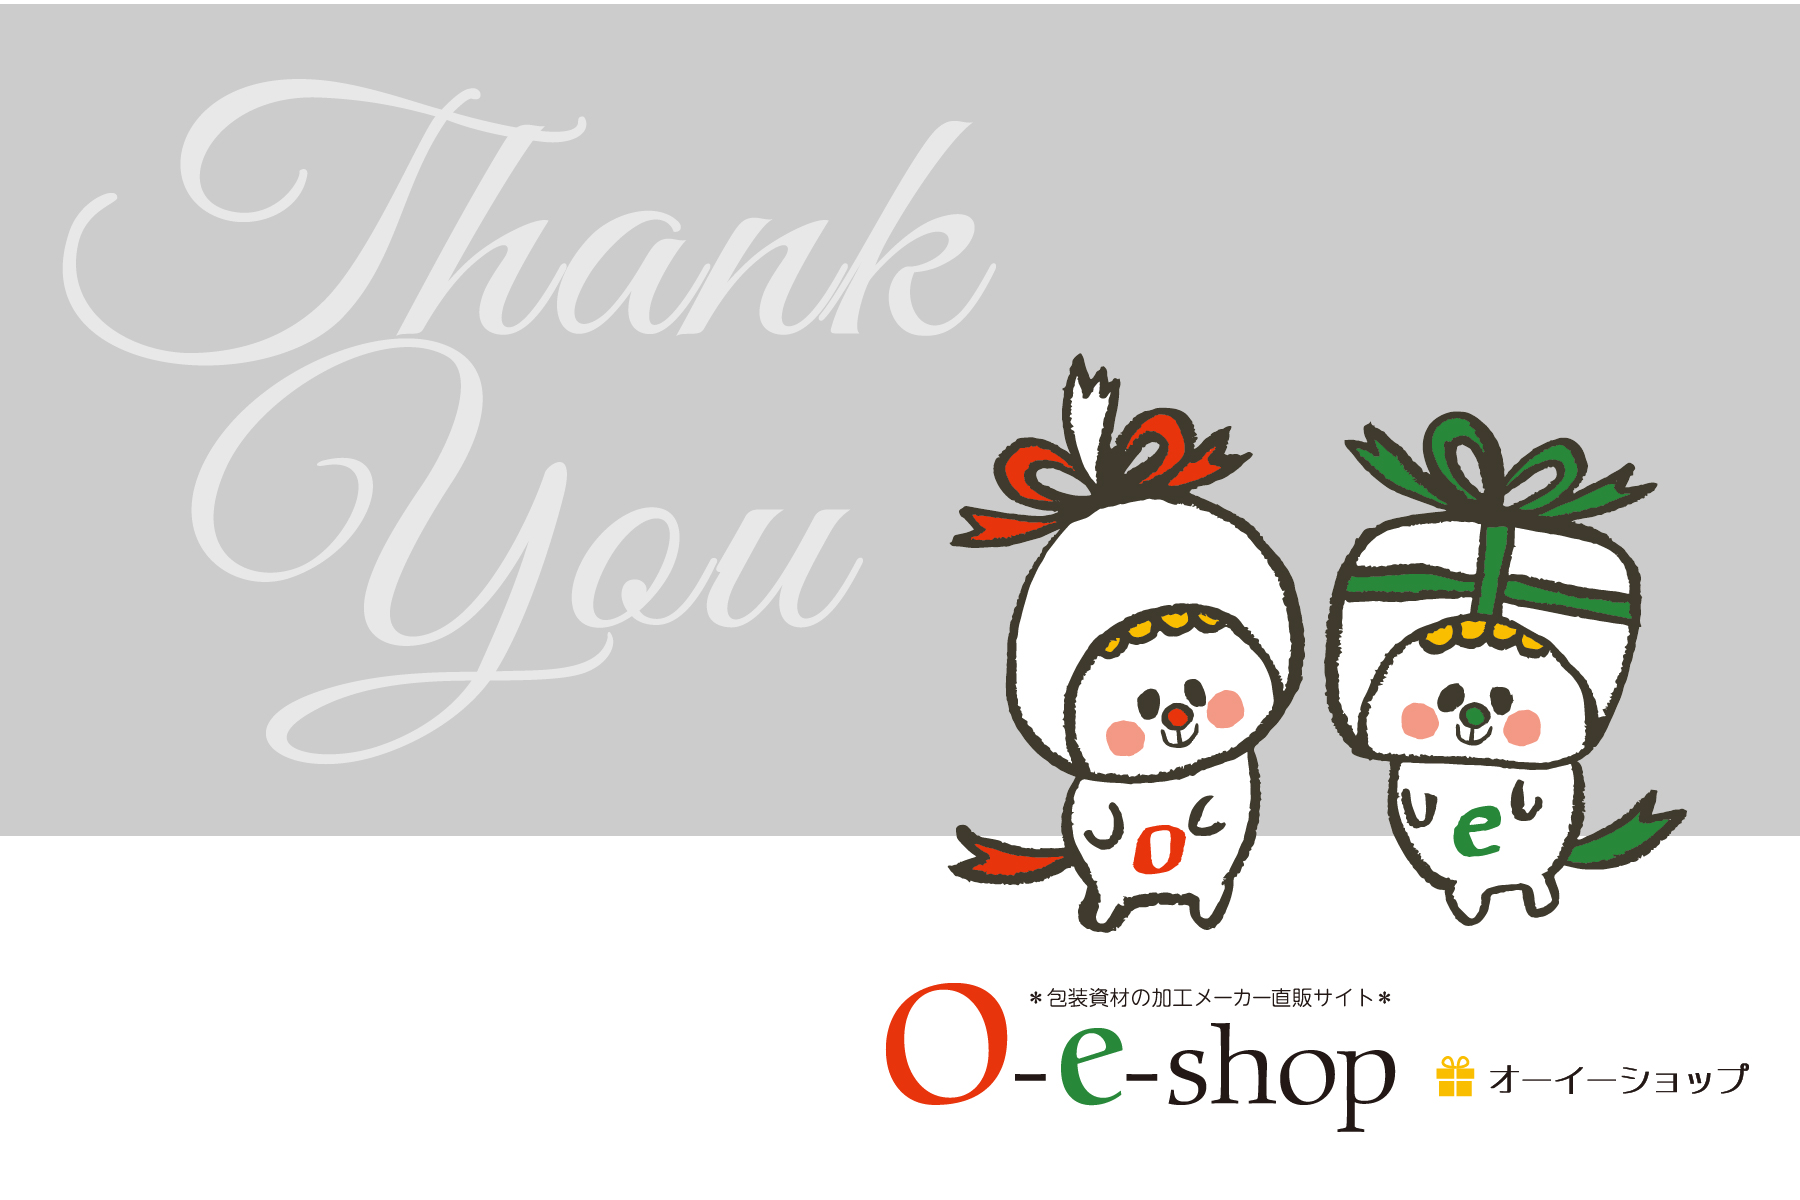 O-e-shop 閉店のお知らせ